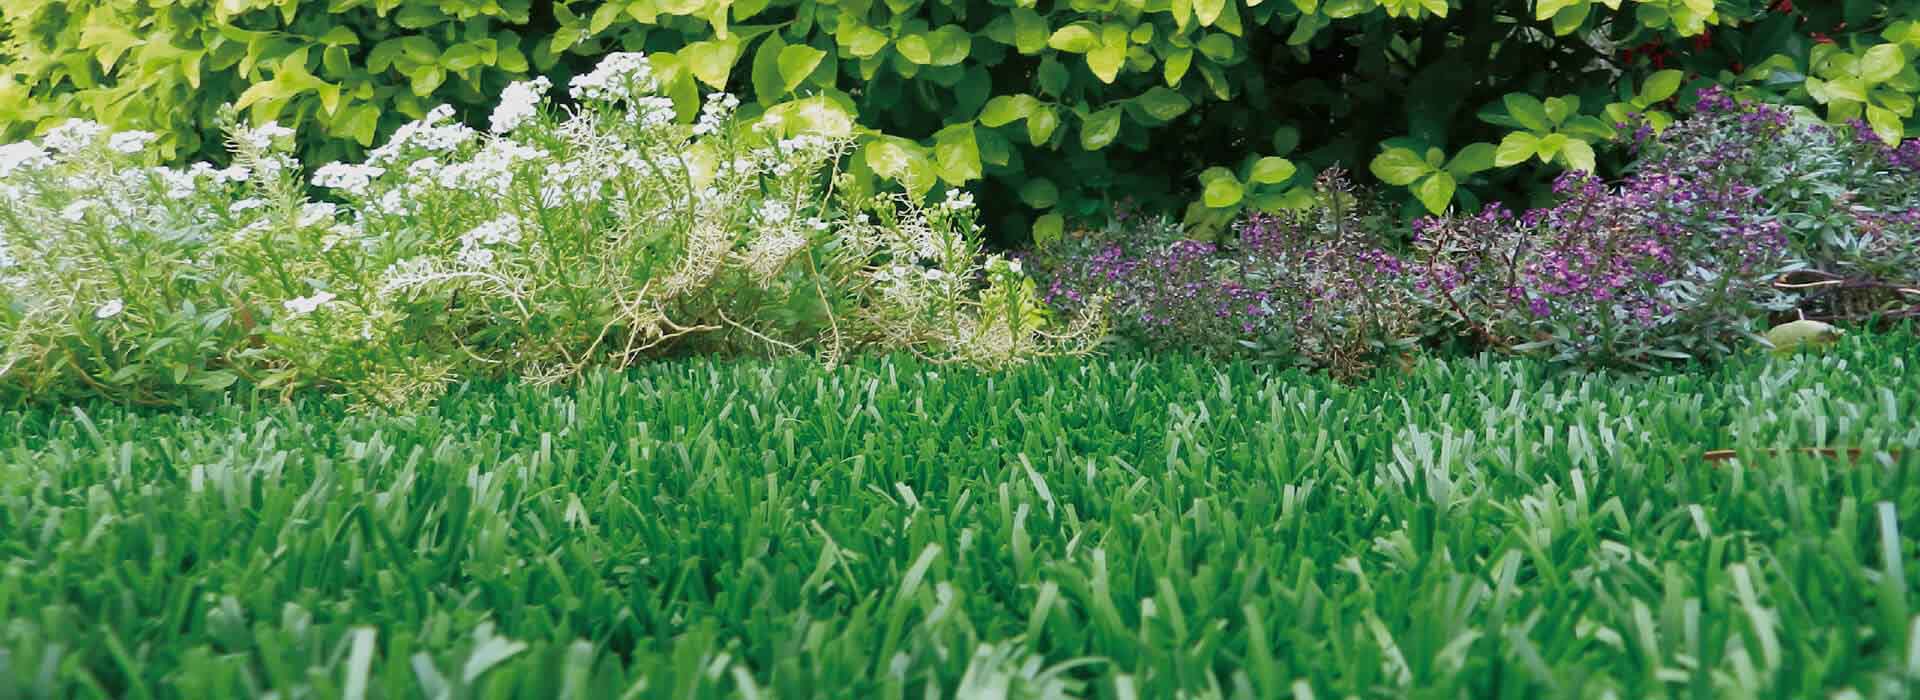 ccgrass artificial grass manufacturer landscape product